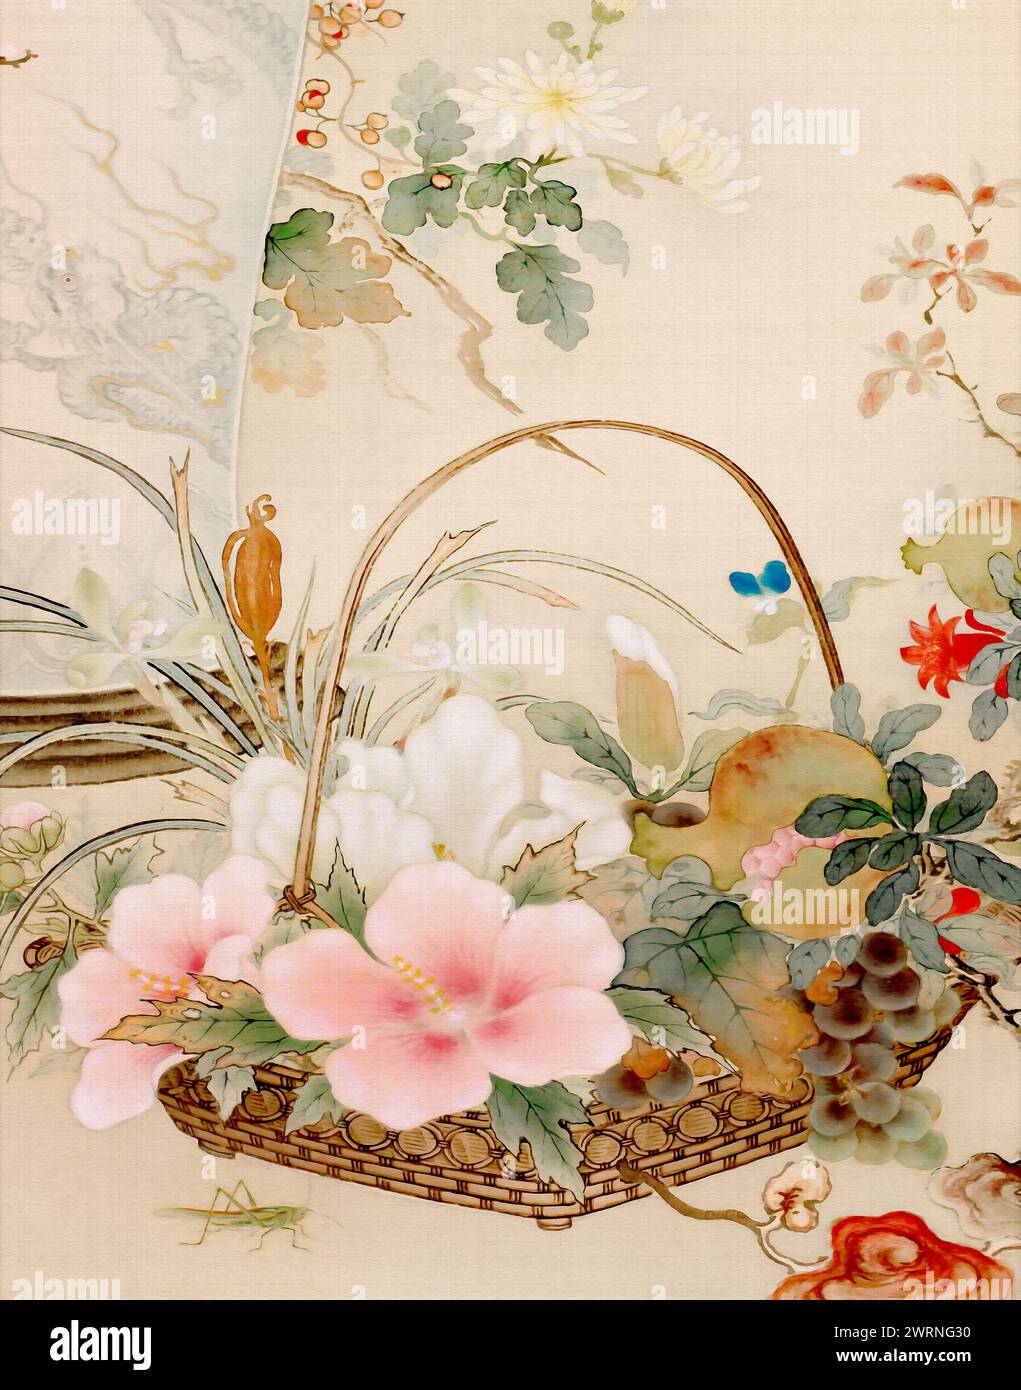 Motif floral oriental exquis. C'est une illustration numérique réalisée dans des tons pastel doux, avec un fond textile texturé, le tout dans l'élégance Banque D'Images